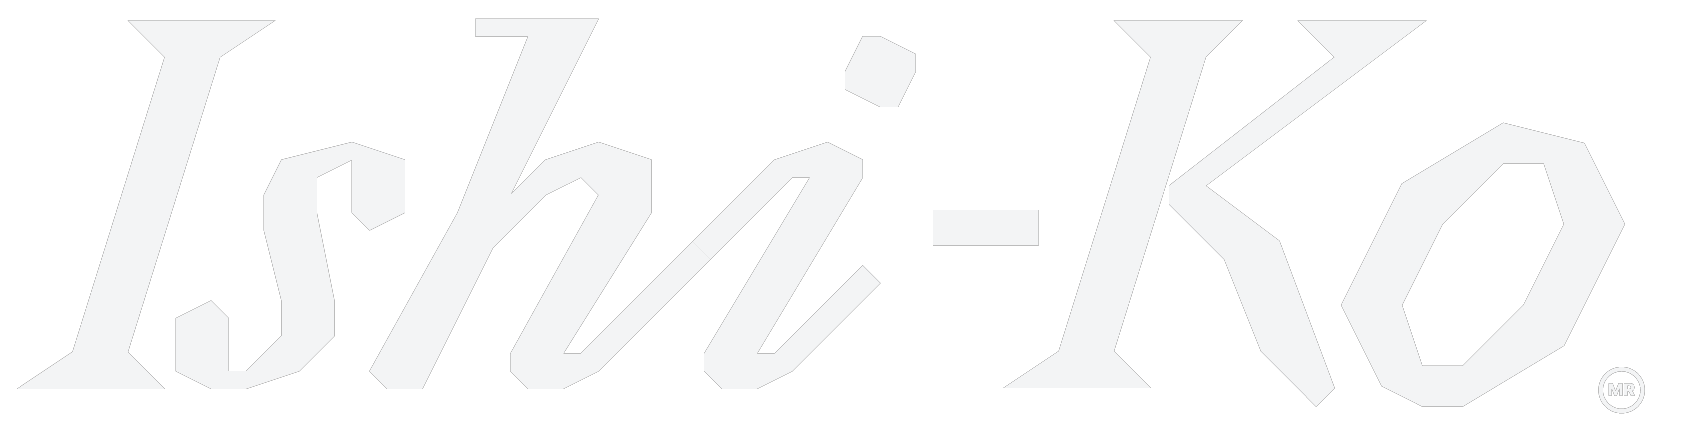 ISHI-KO logo